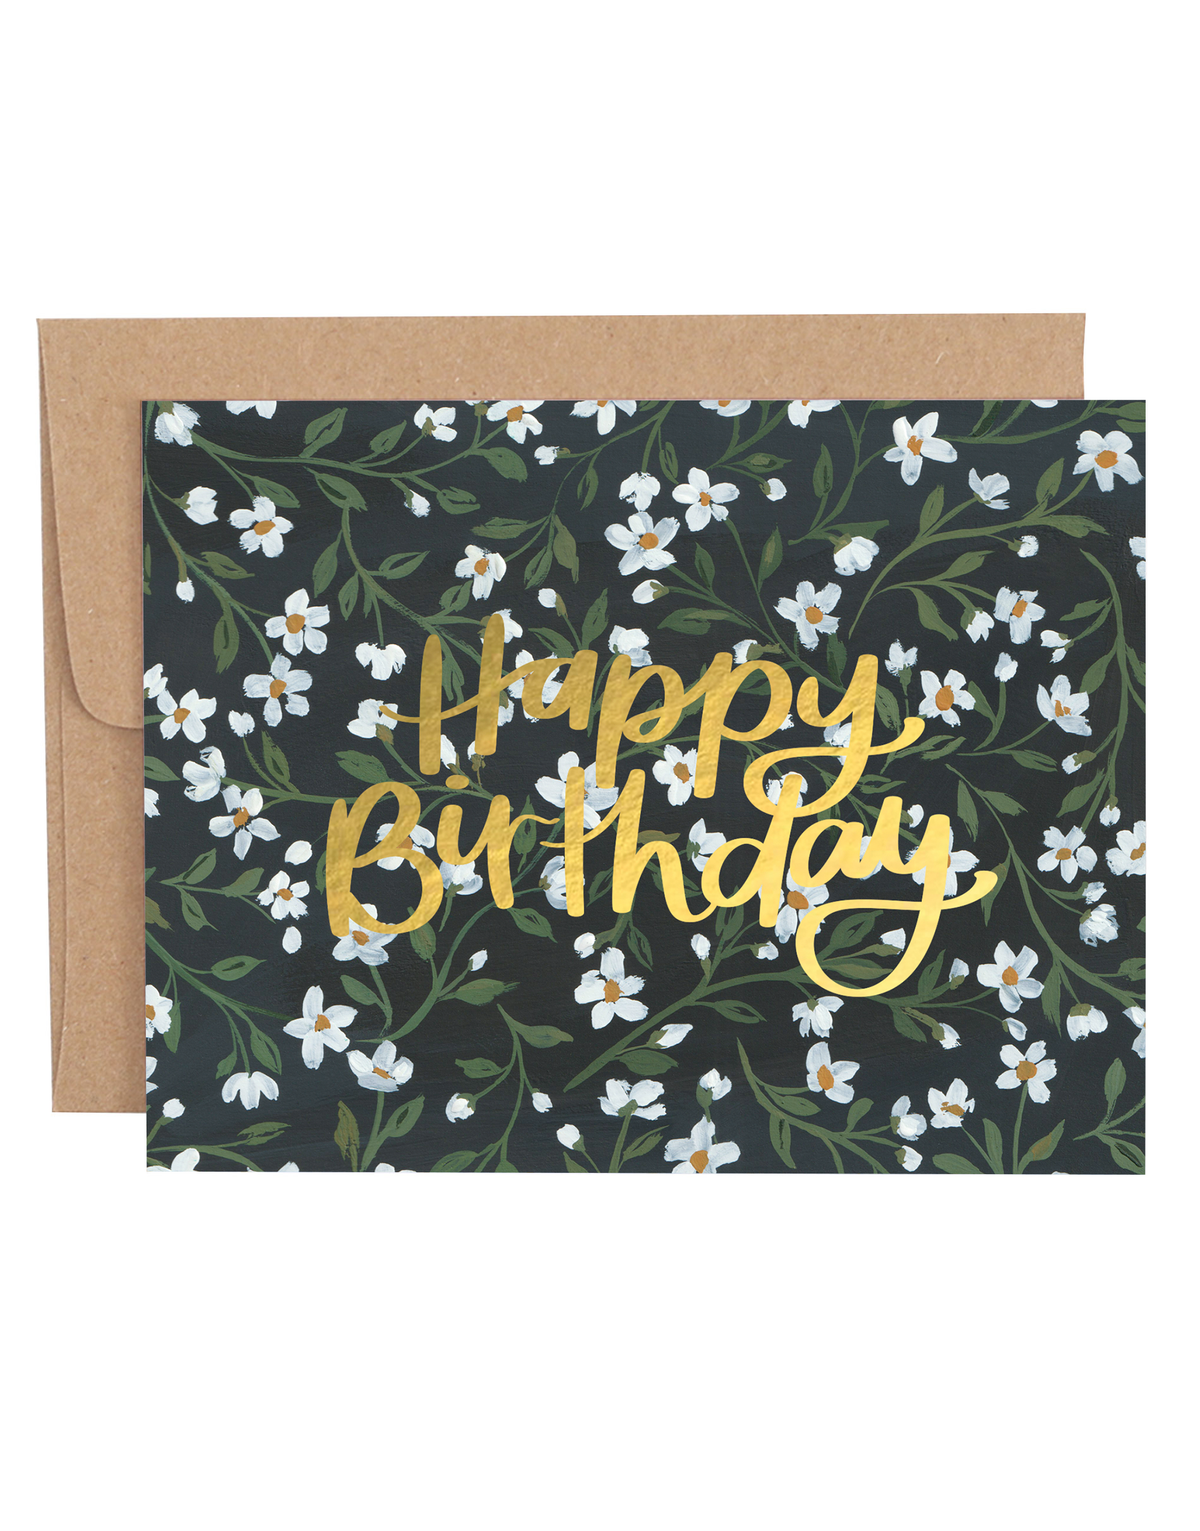 Vintage Floral Birthday Greeting Card item